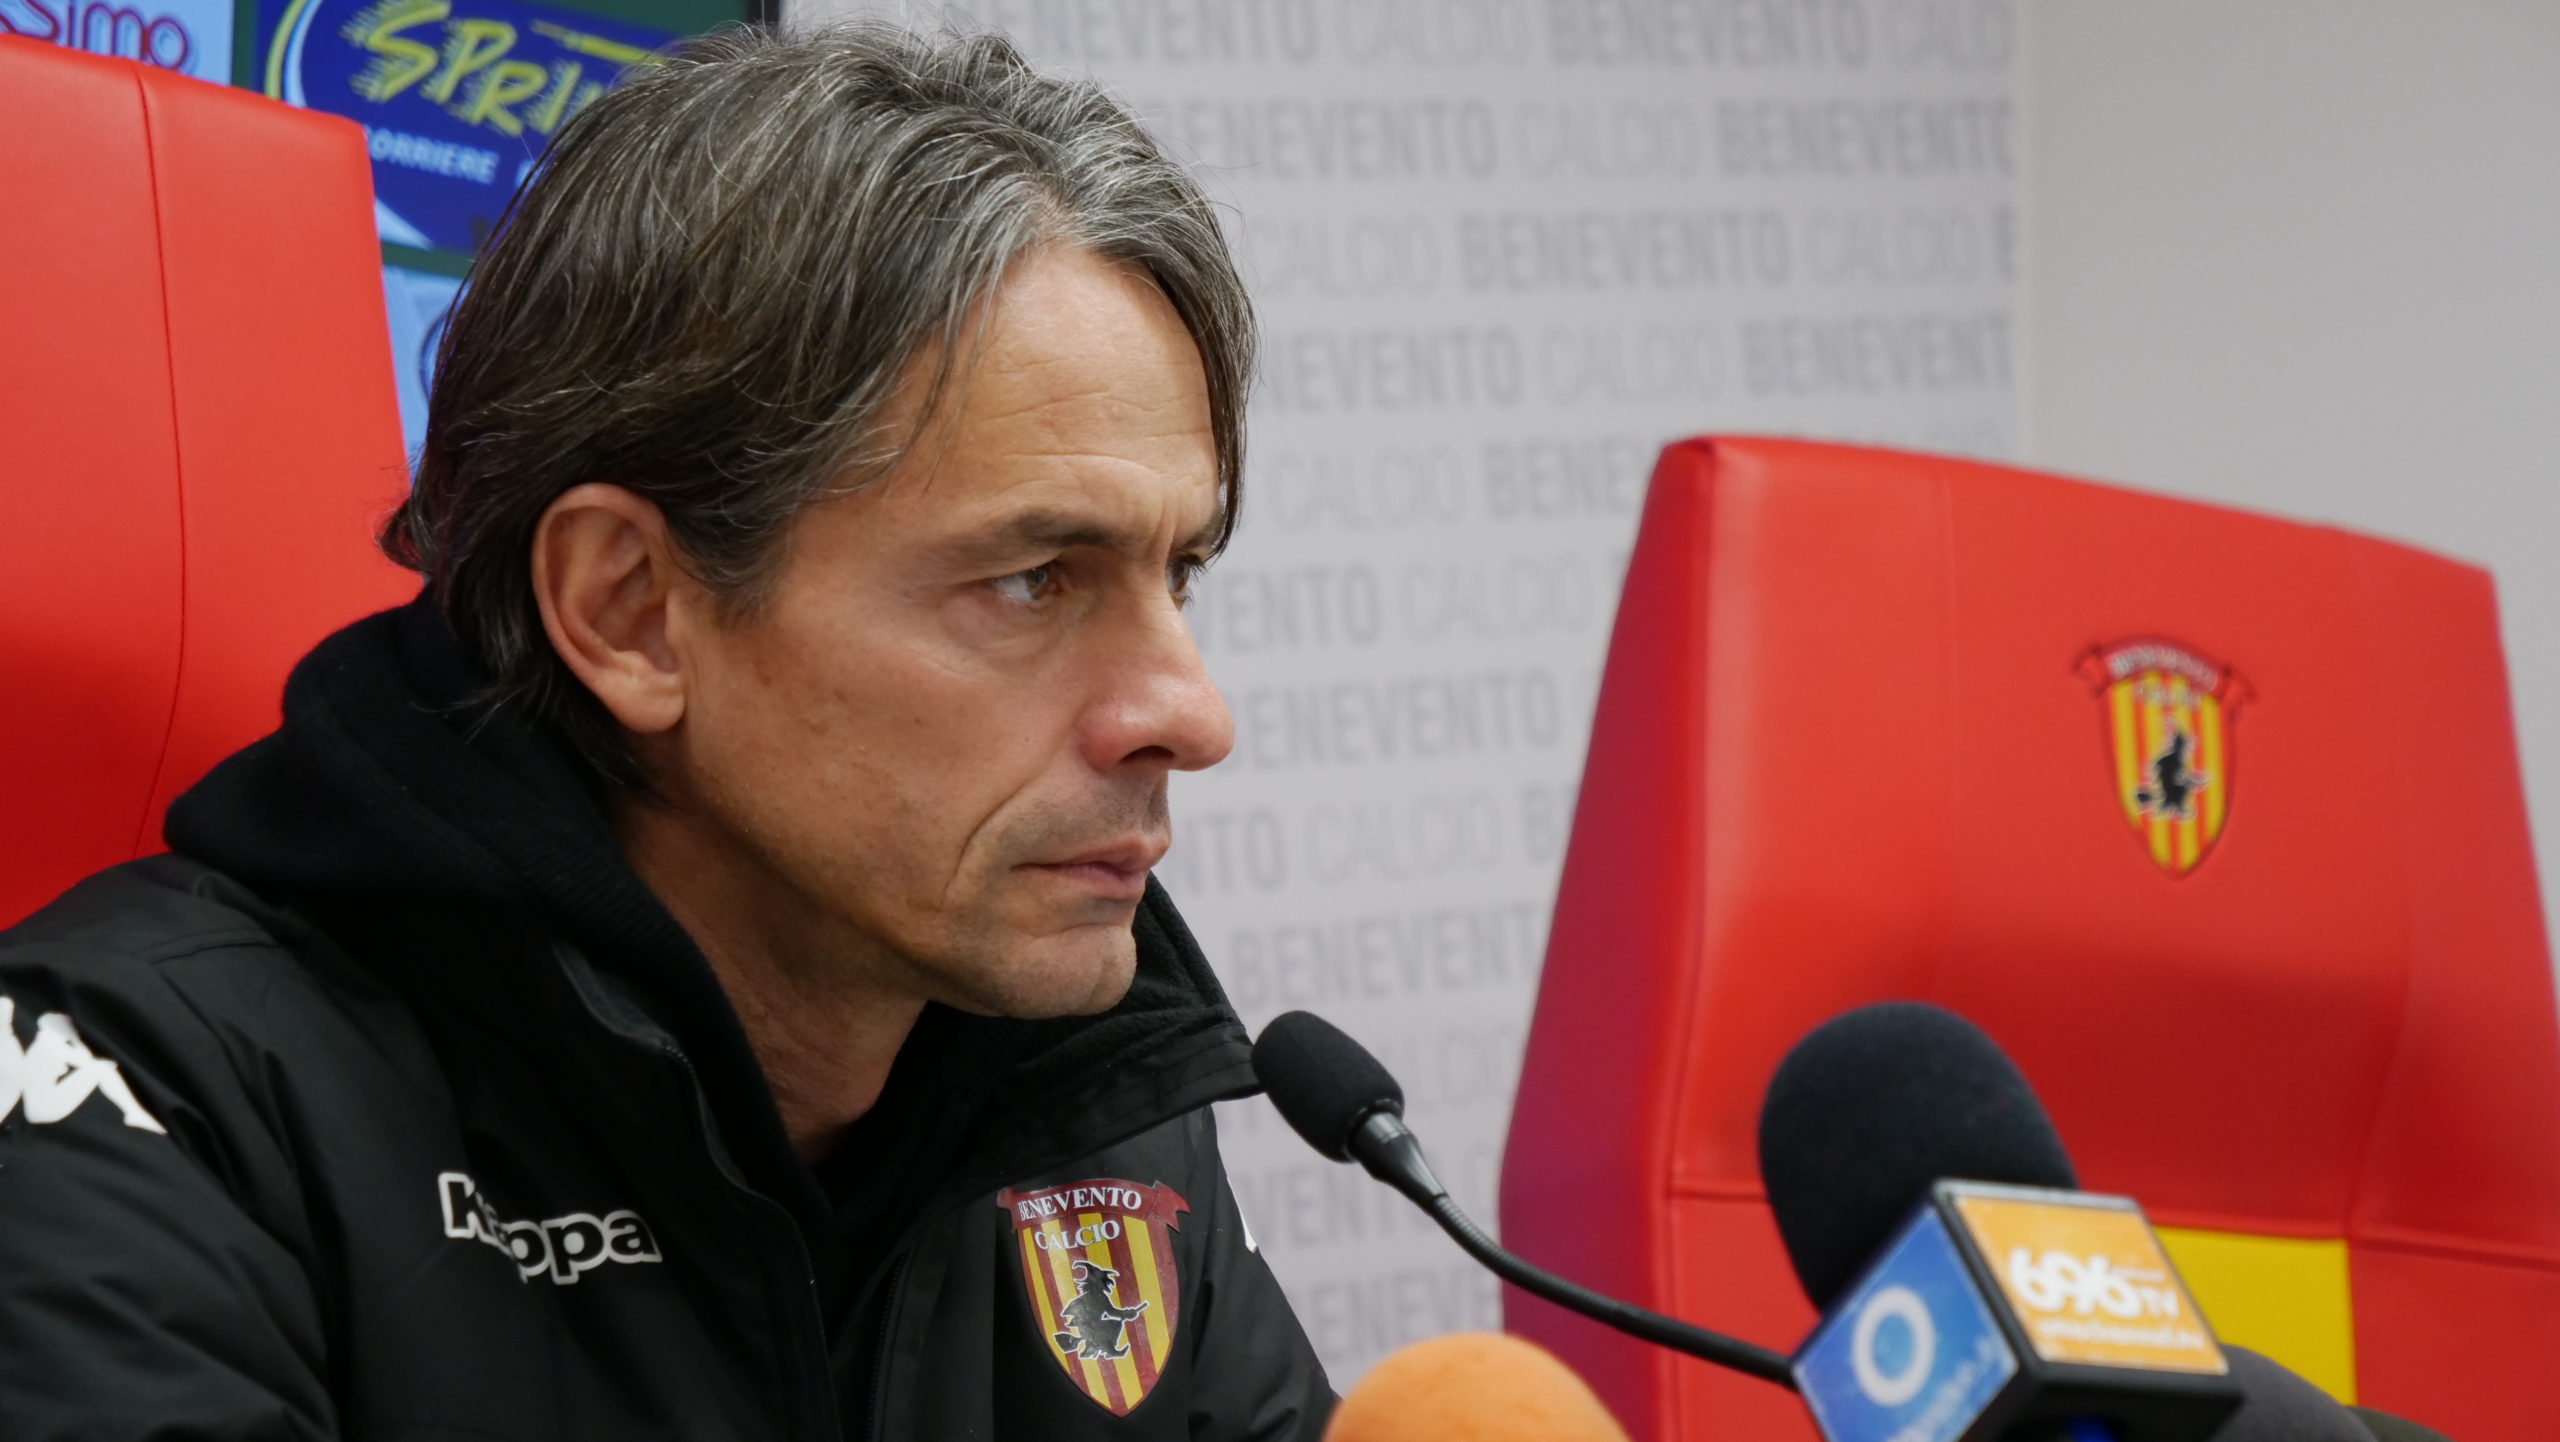 Benevento, Inzaghi: “9 punti non danno alcun premio, quello dobbiamo prendercelo a maggio”